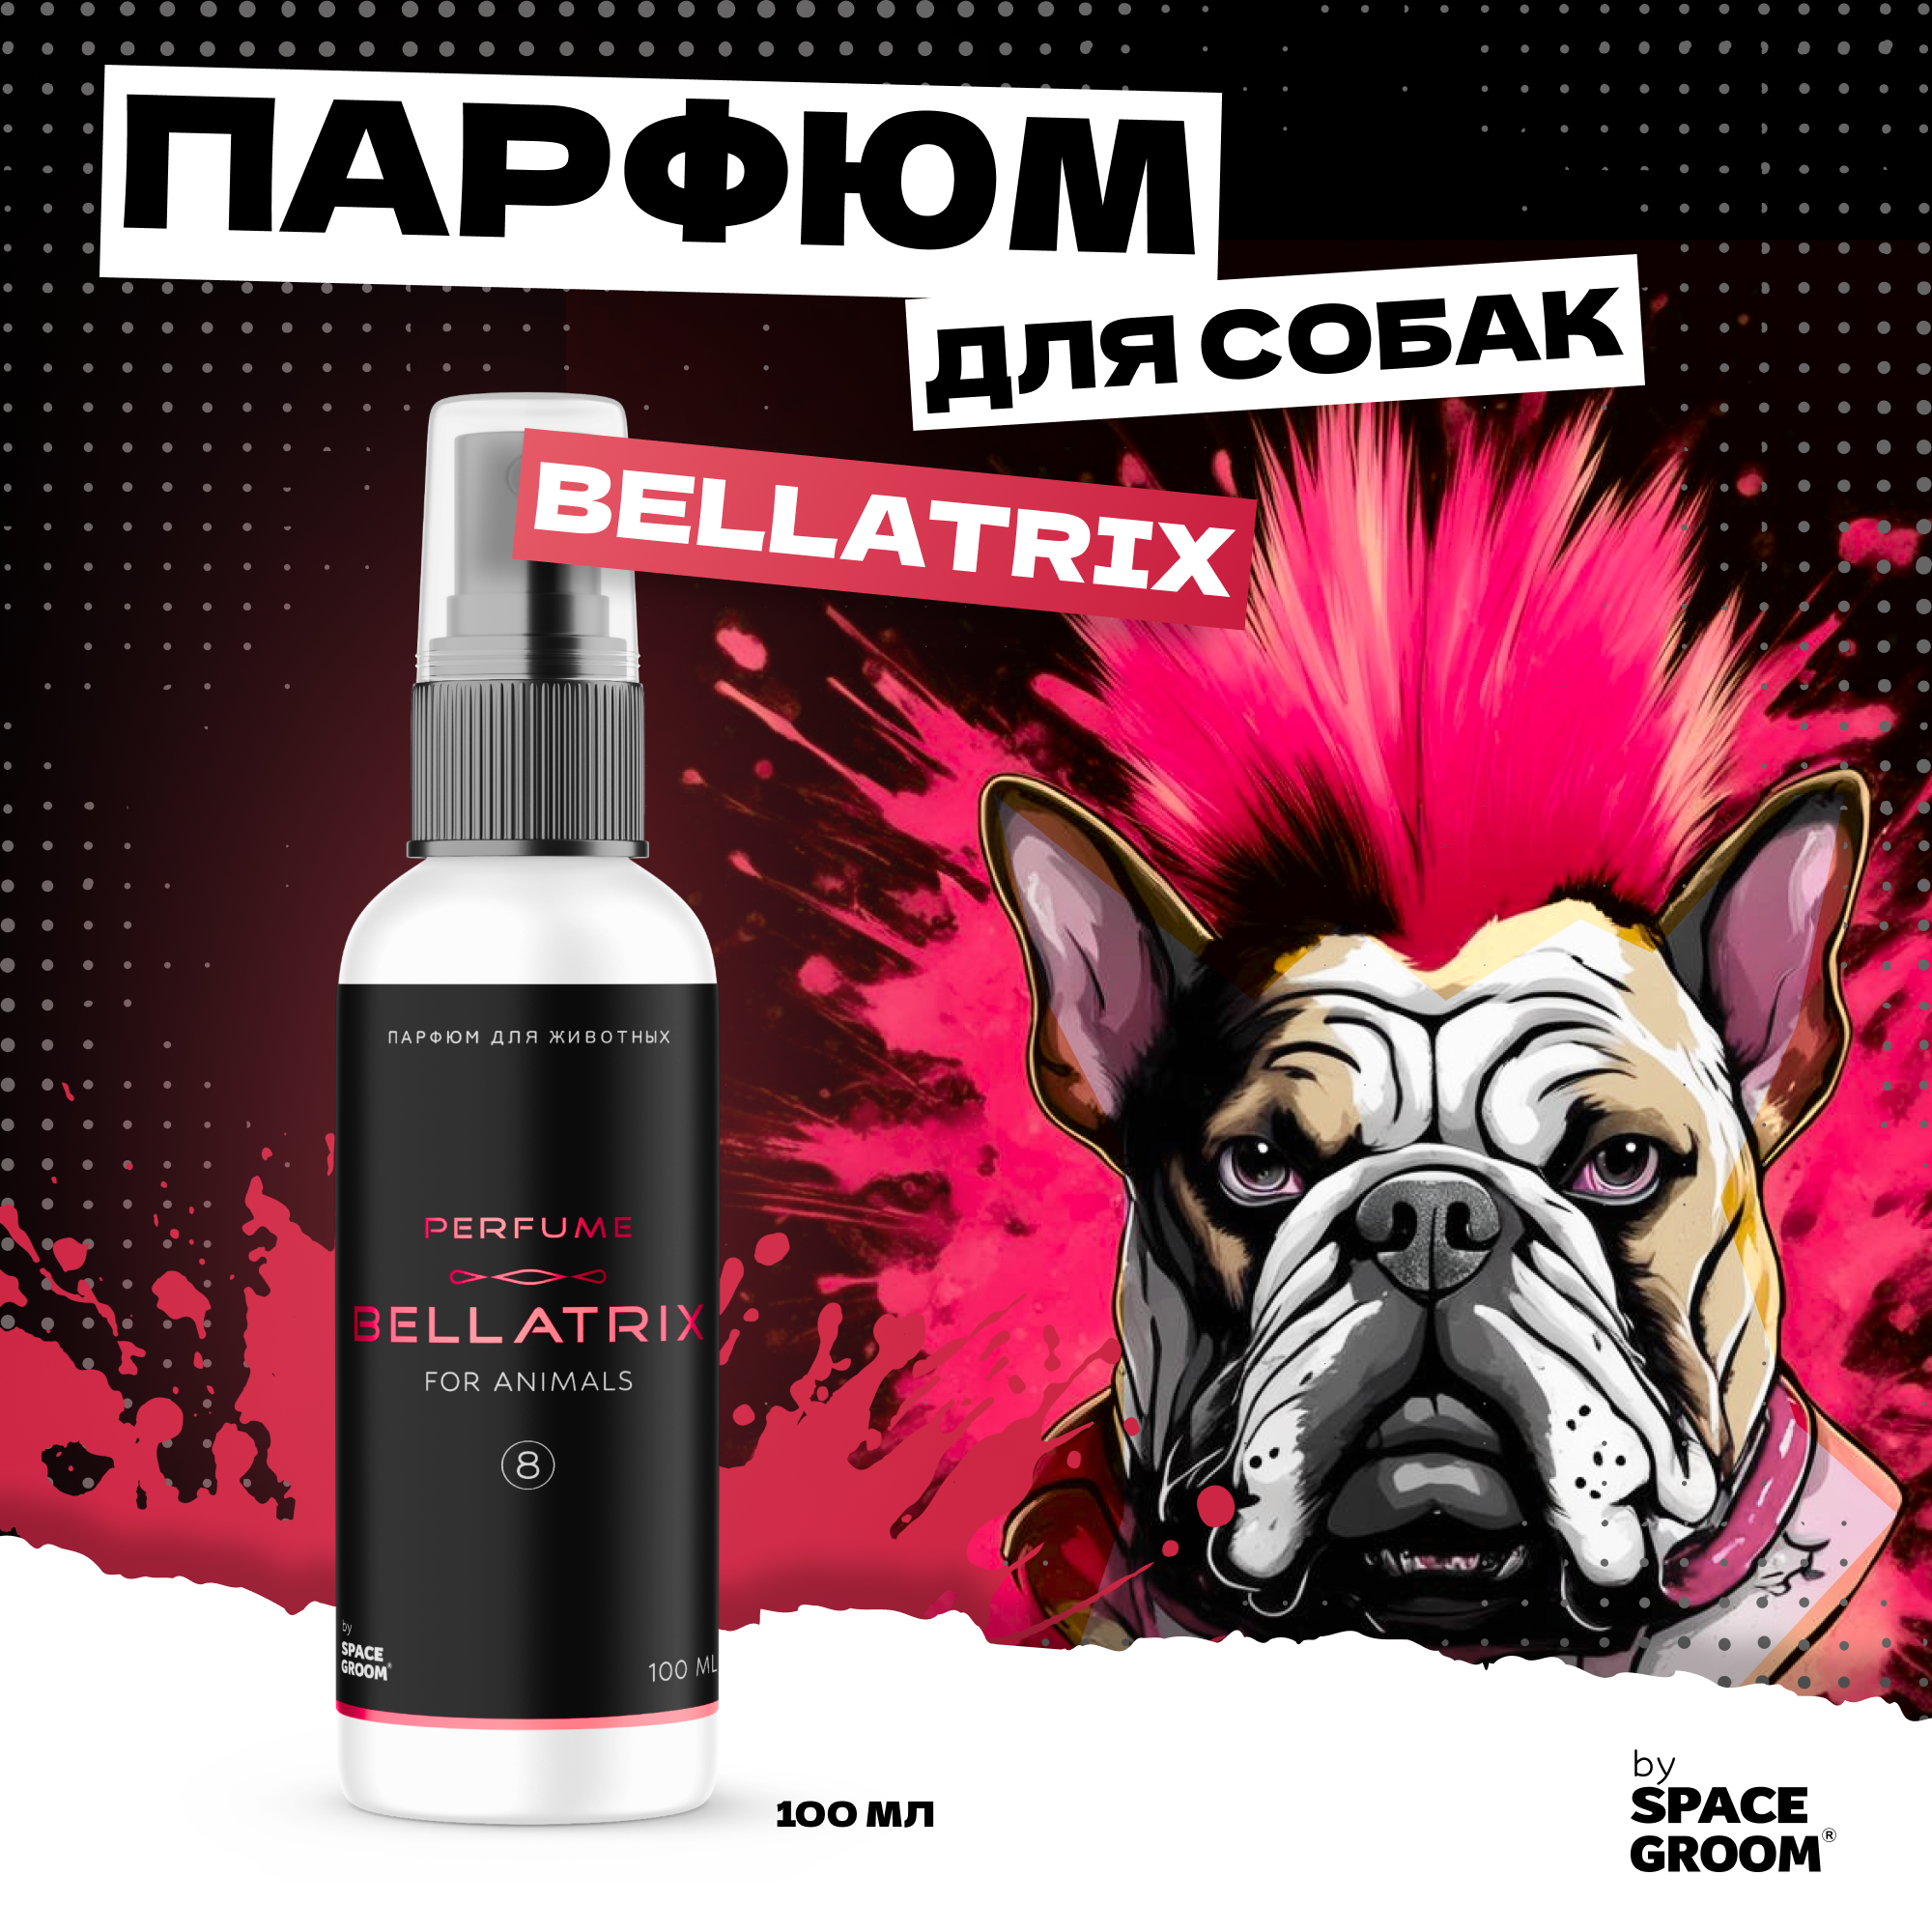 Духи для собак BELLATRIX с ароматом восточных цитрусовых, сочного яблока, сандалового дерева и мускуса, парфюм для собак Space Groom, 100 мл